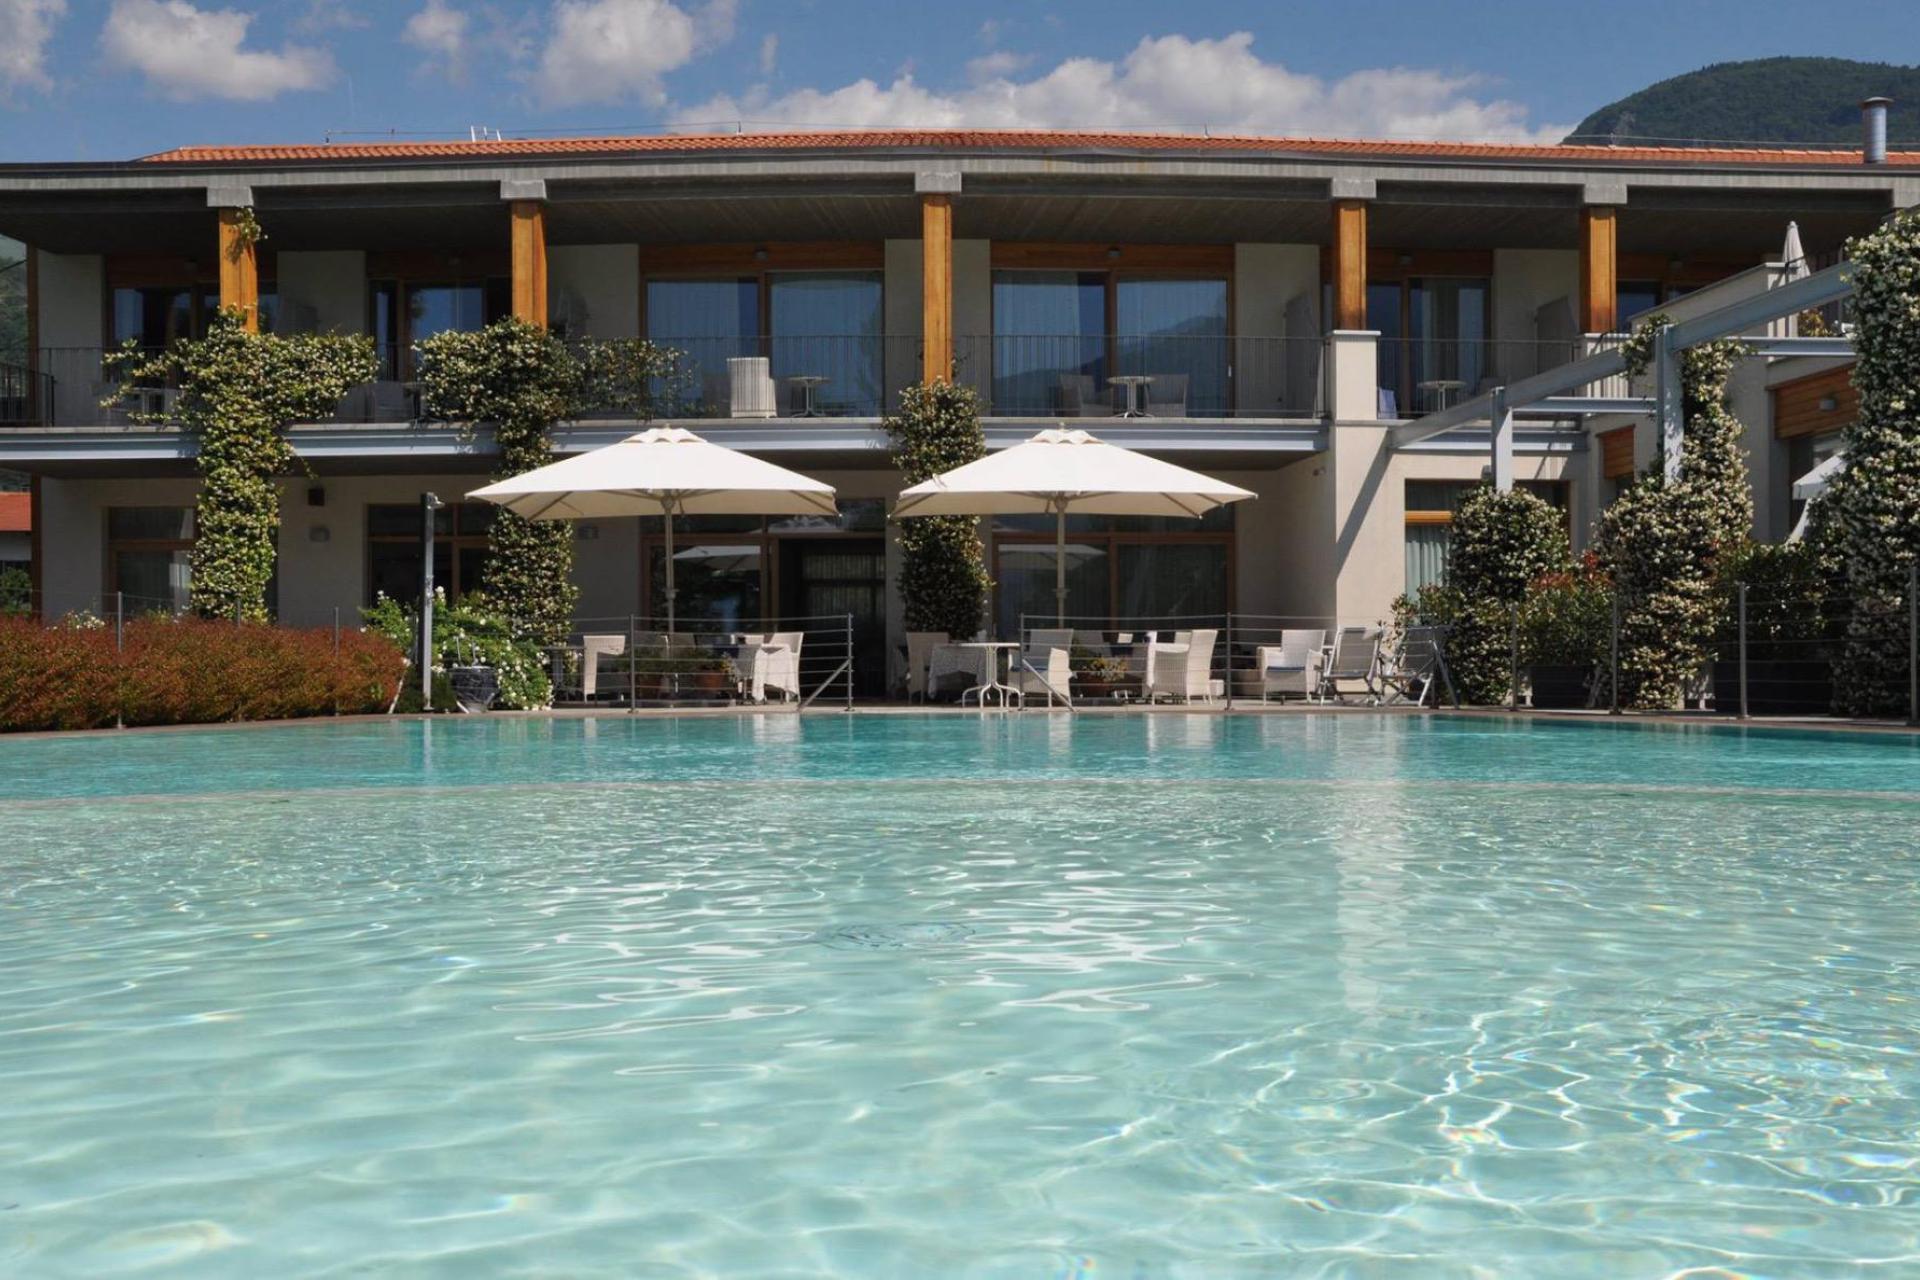 Piccolo hotel di campagna in bella posizione sul lago di Como